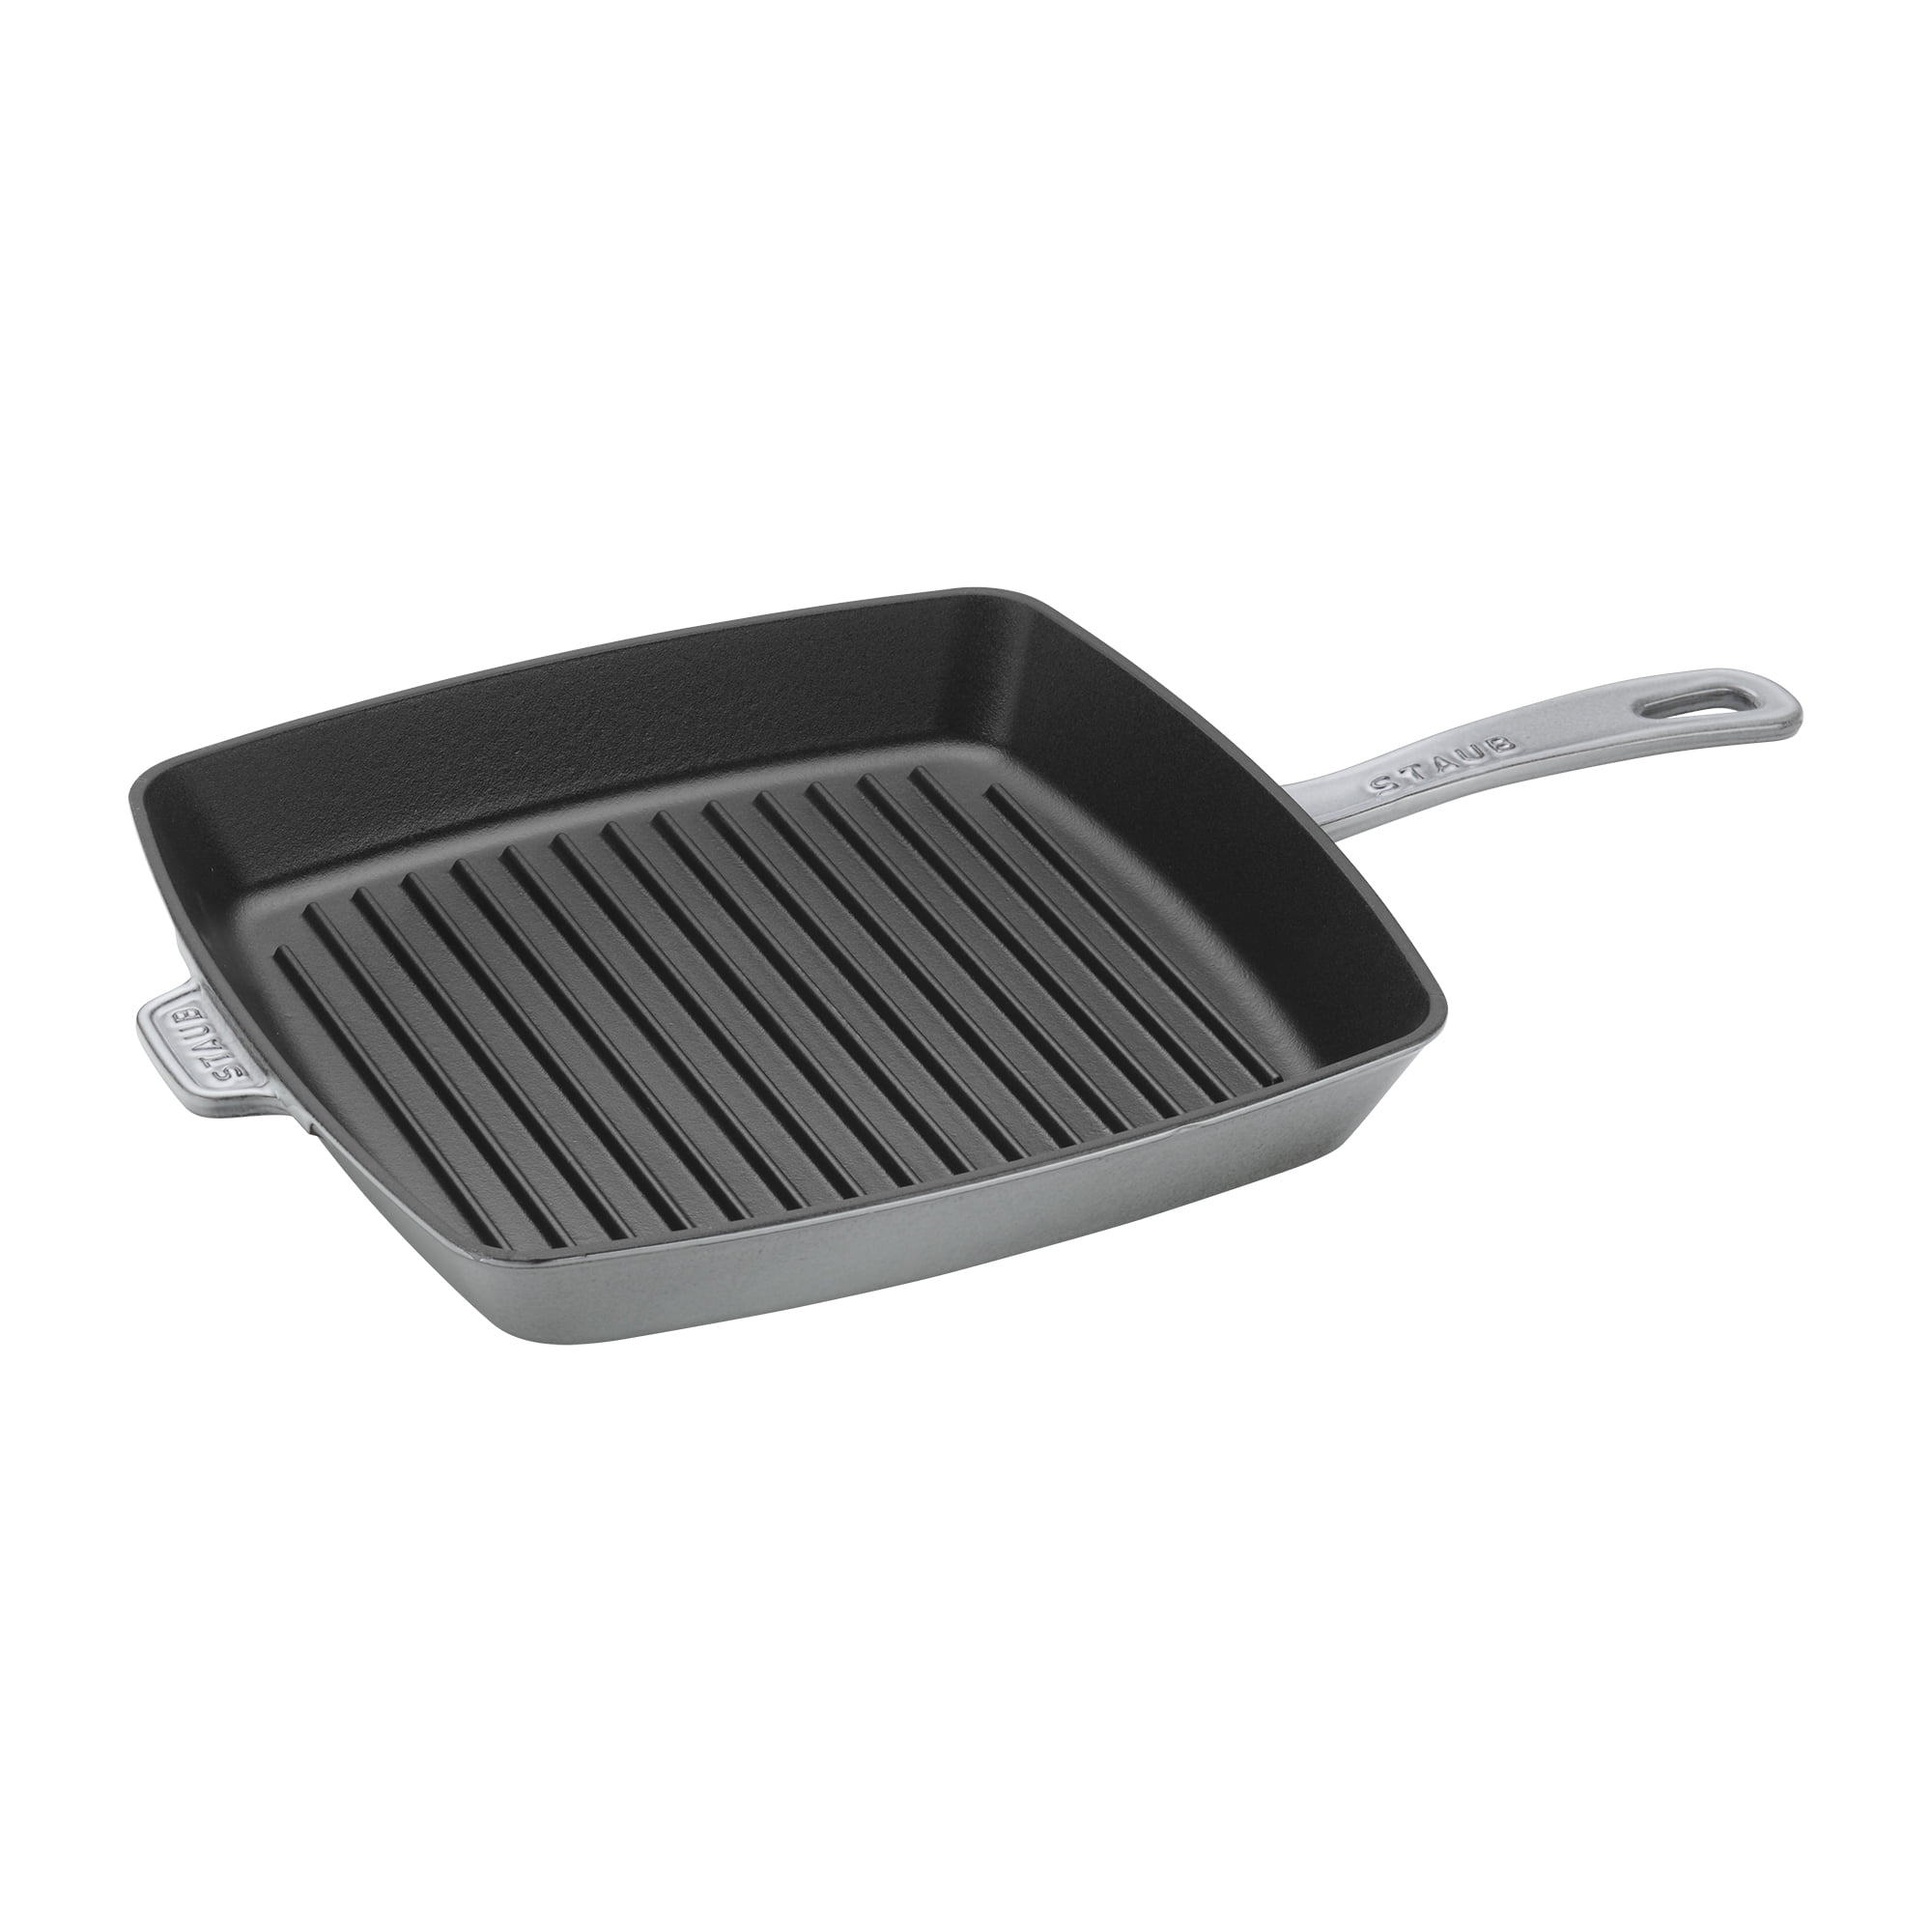 Staub Cast-Iron Double Burner Griddle Pan